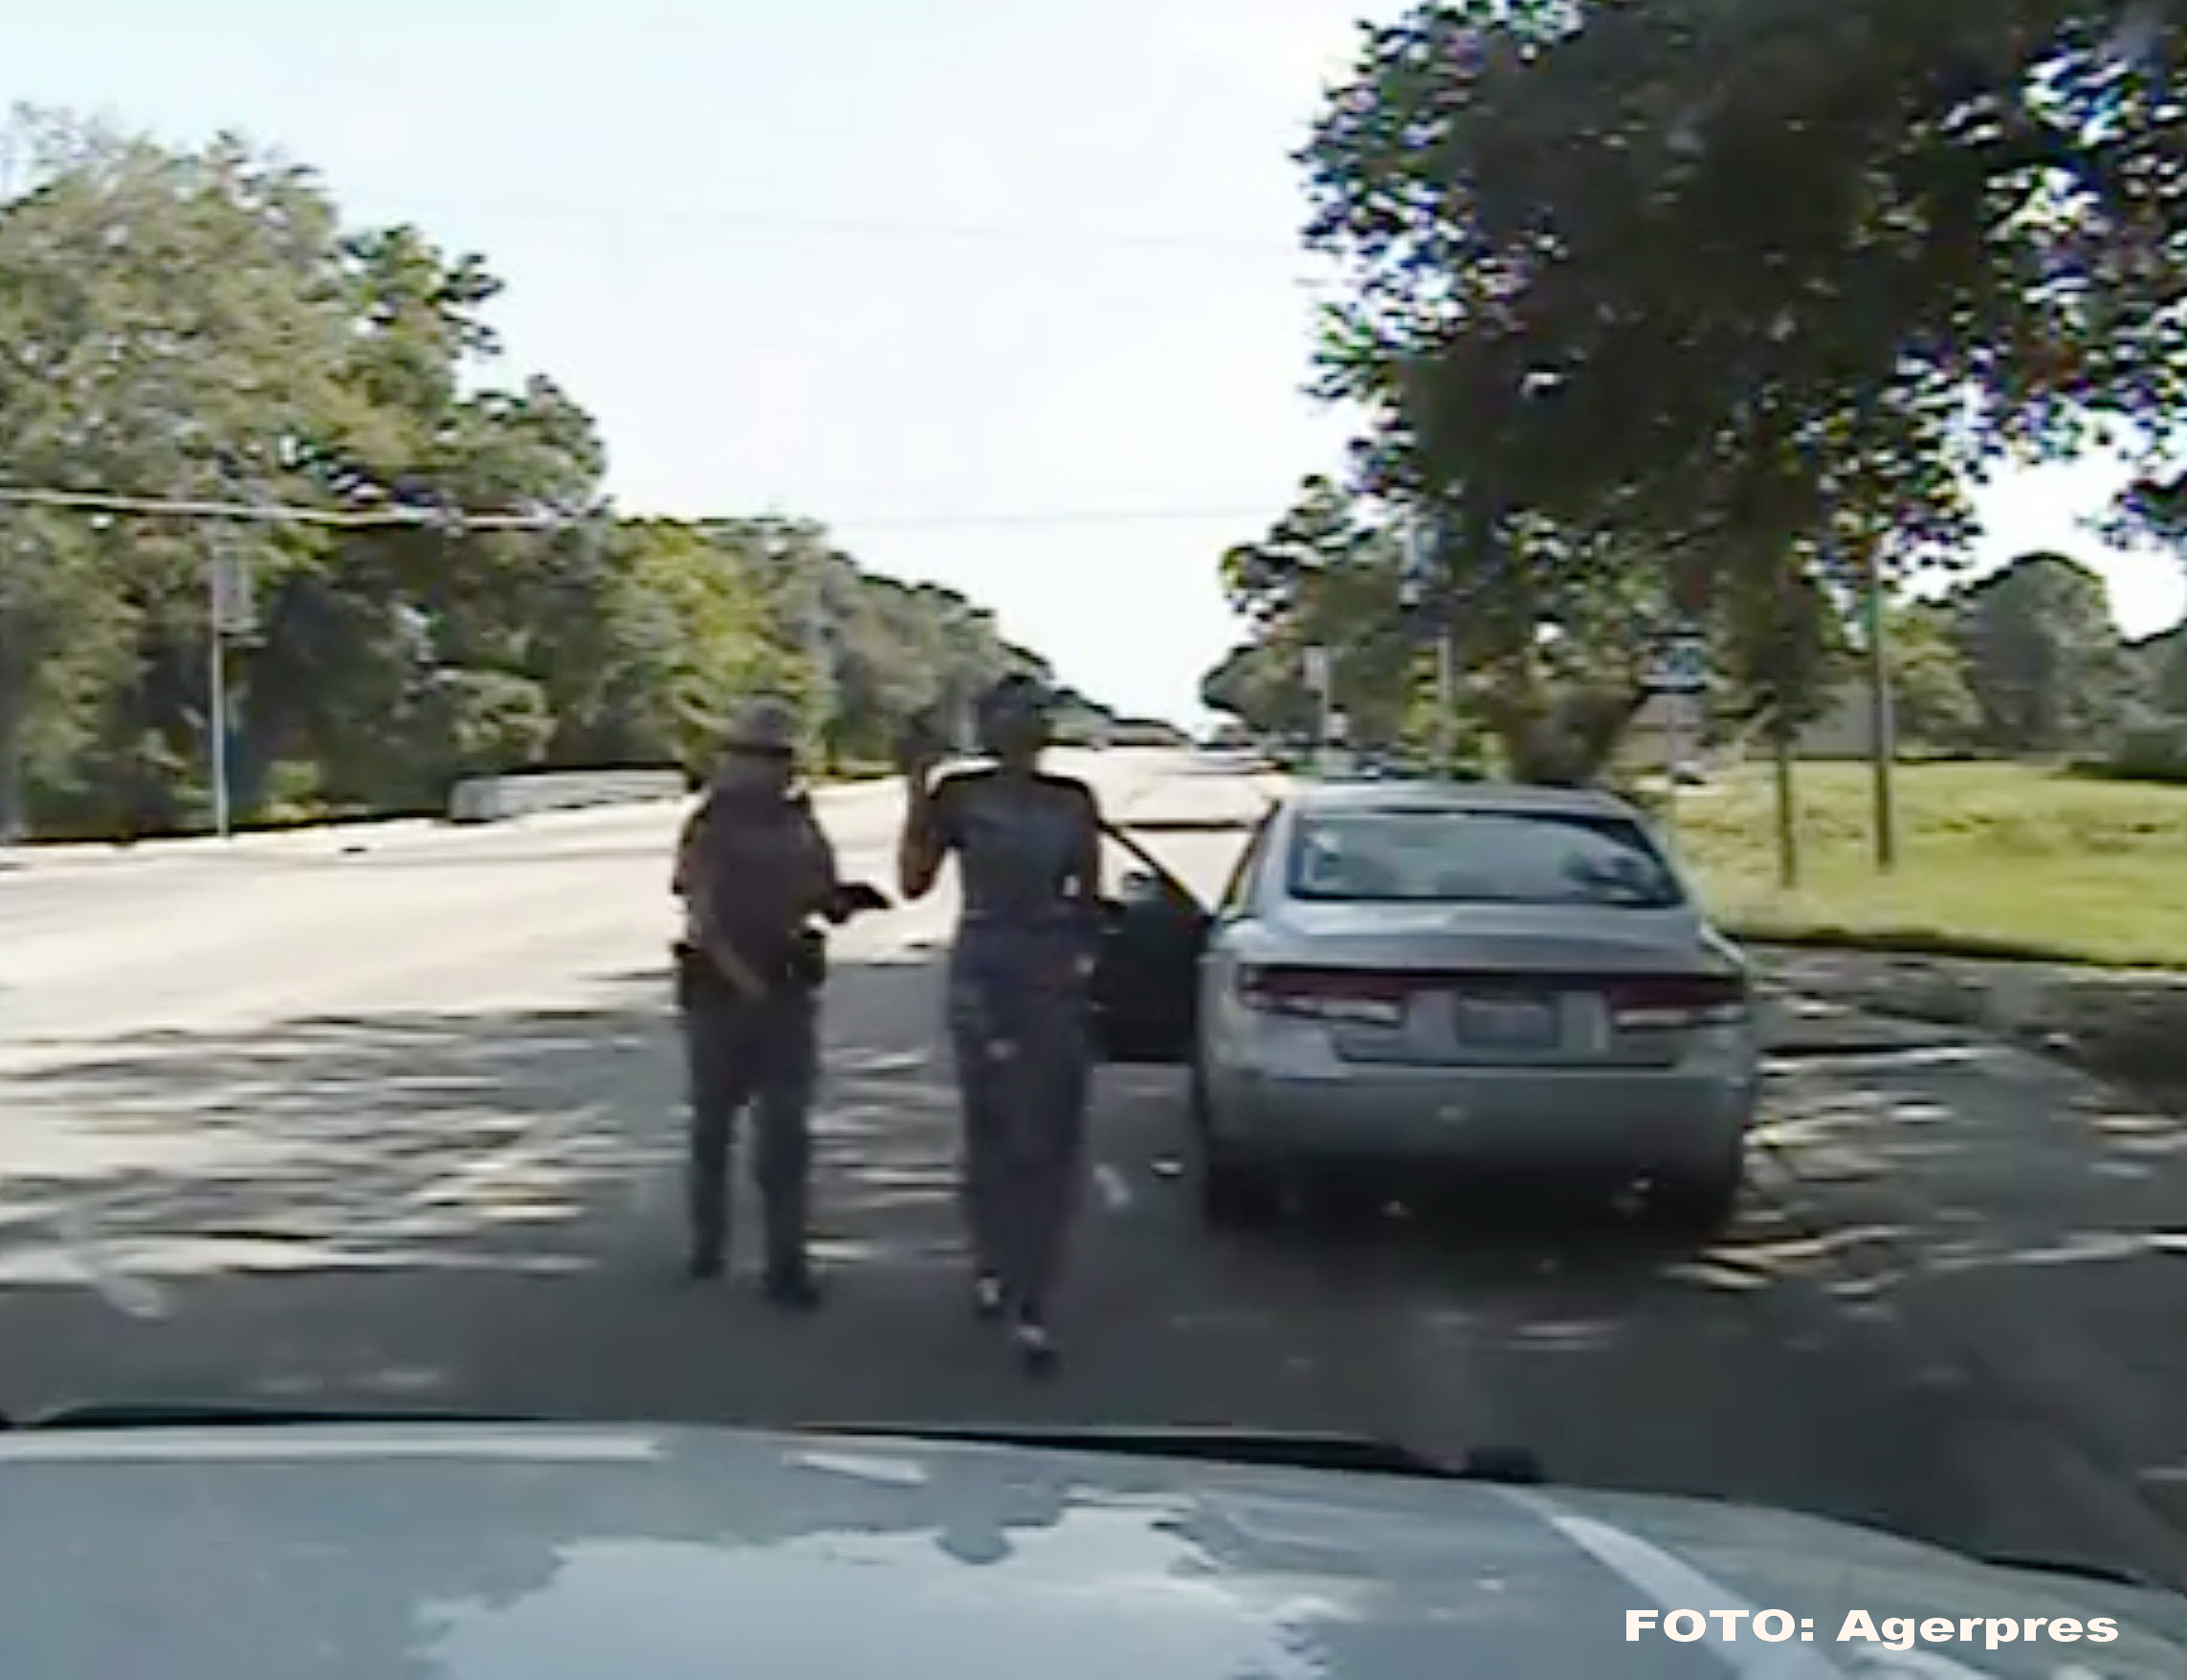 Sandra Bland, inca un caz scandalos in SUA. Tanara de culoare, arestata de politie la un control rutier, moarta in inchisoare